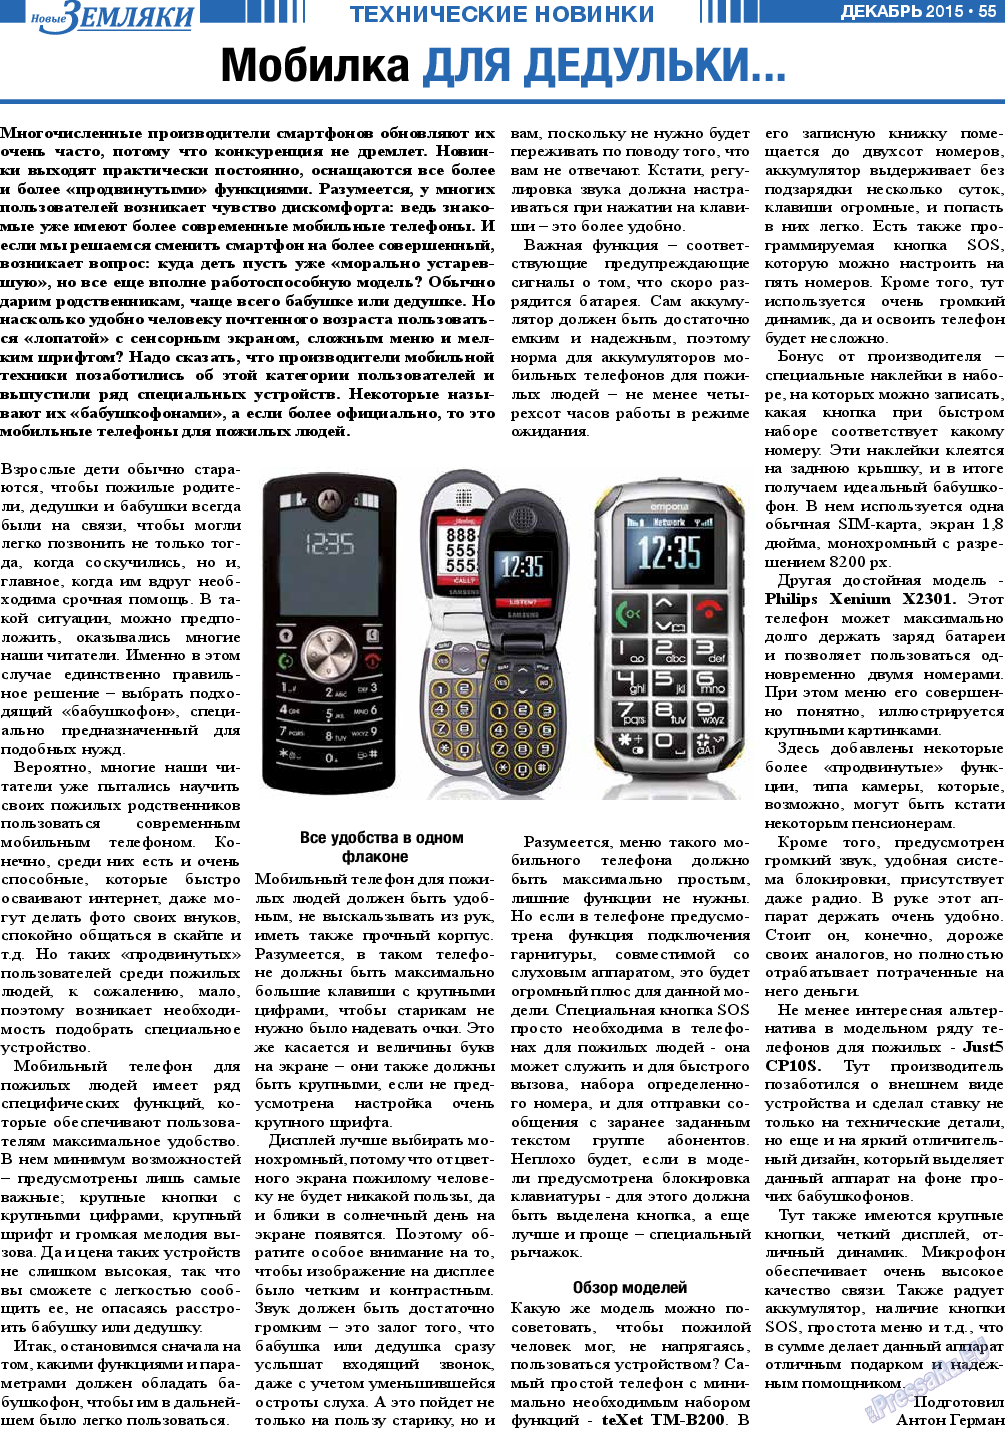 Новые Земляки (газета). 2015 год, номер 12, стр. 55